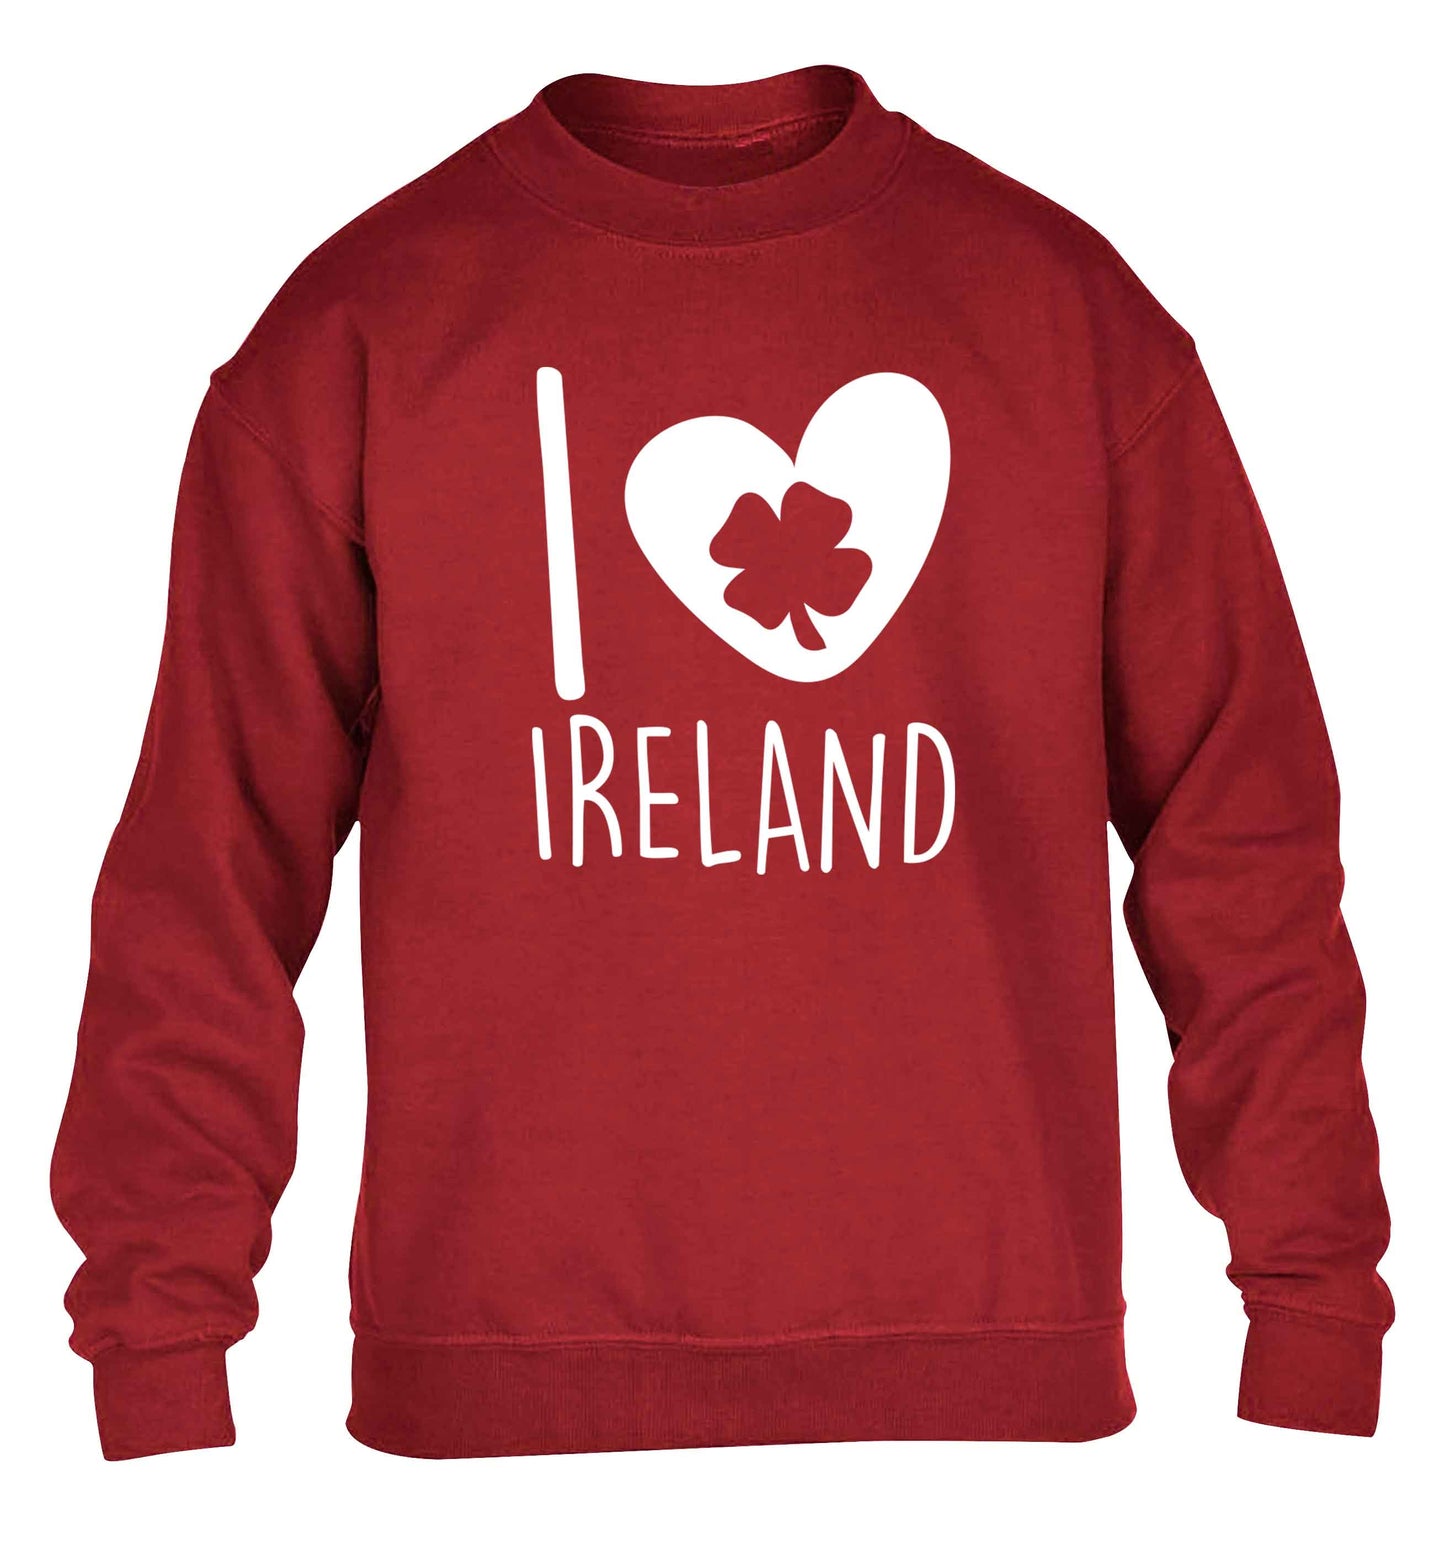 I love Ireland children's grey sweater 12-13 Years